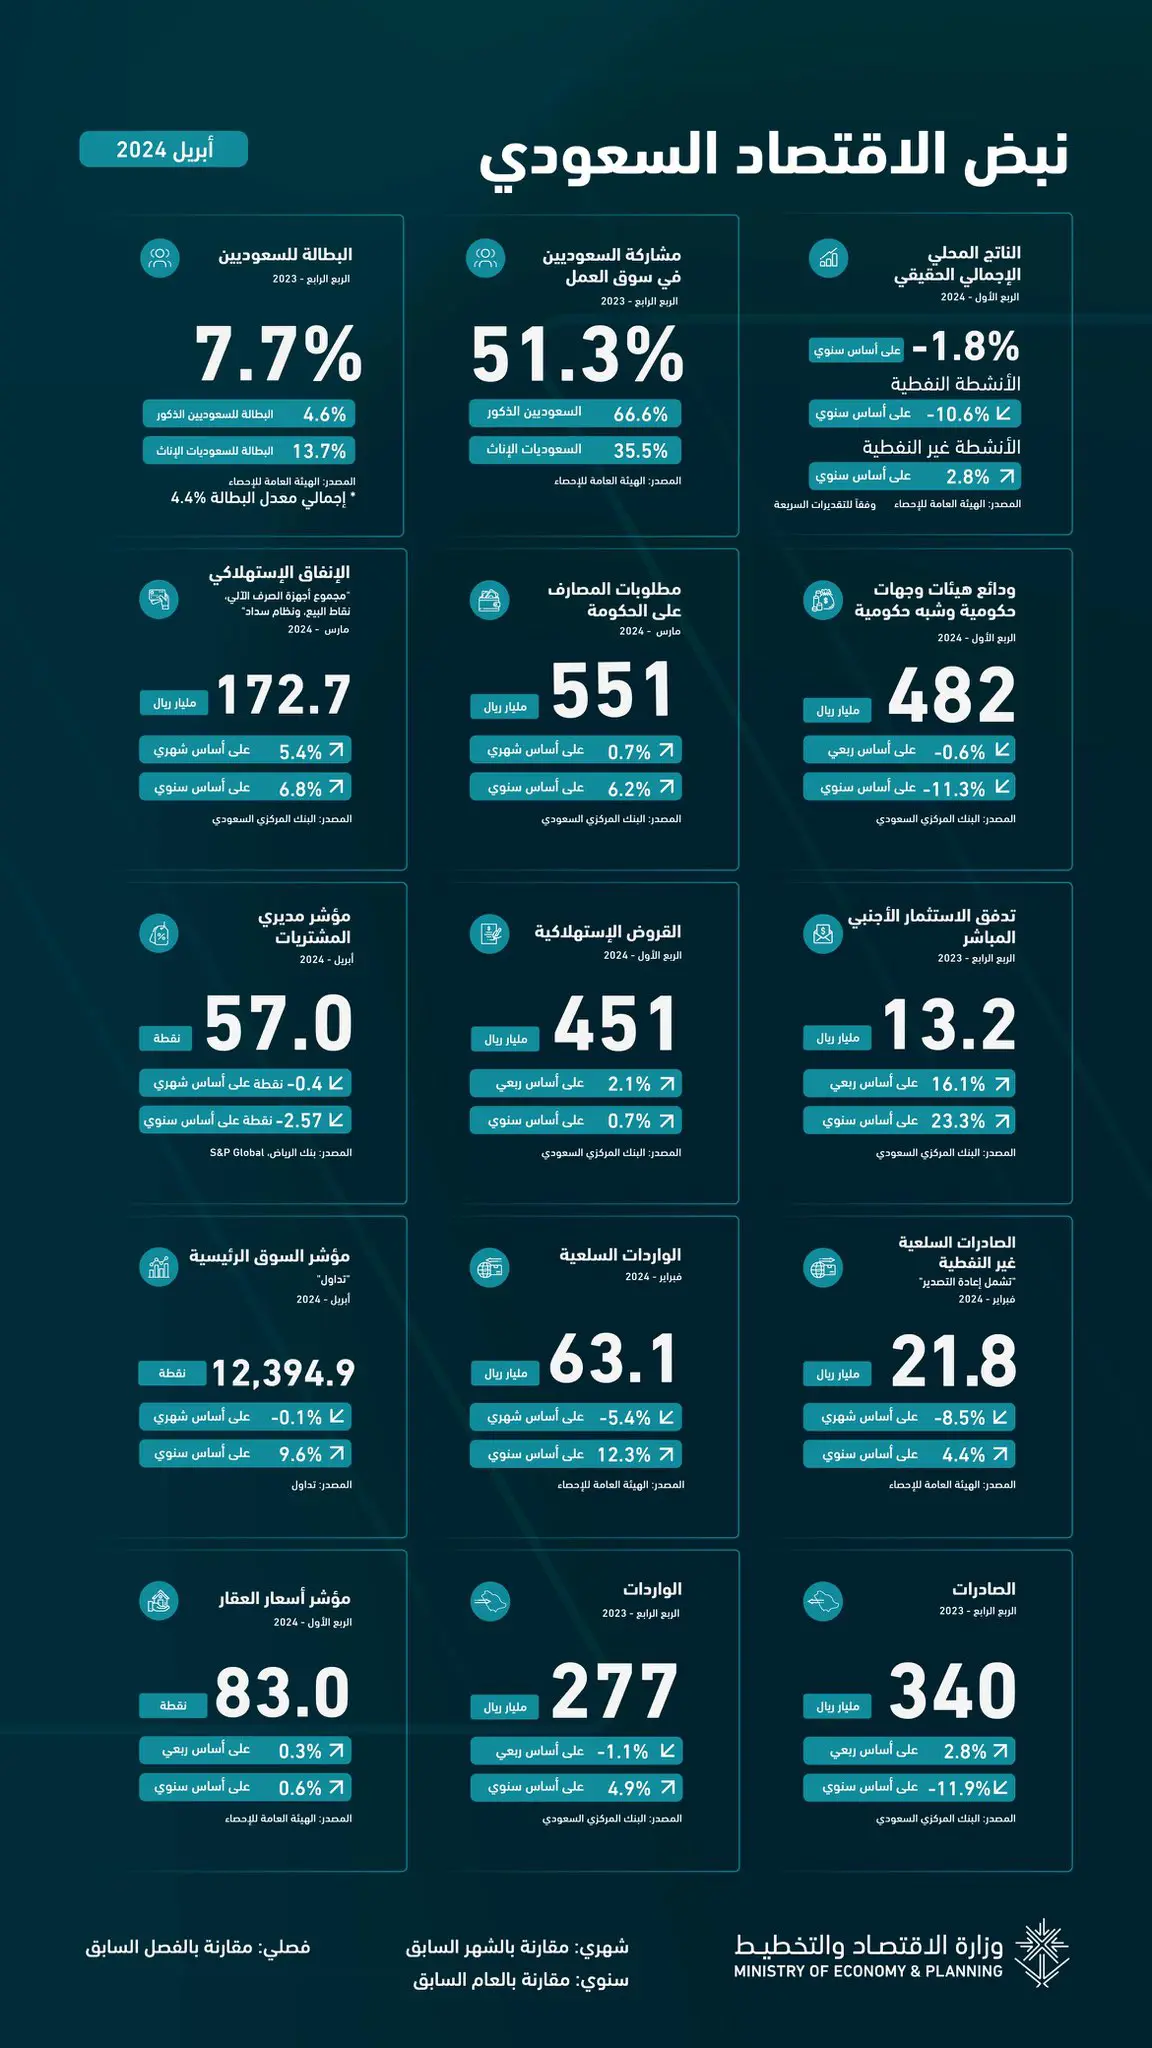 بالأرقام.. تقرير حديث يرصد أحدث مؤشرات الاقتصاد السعودي